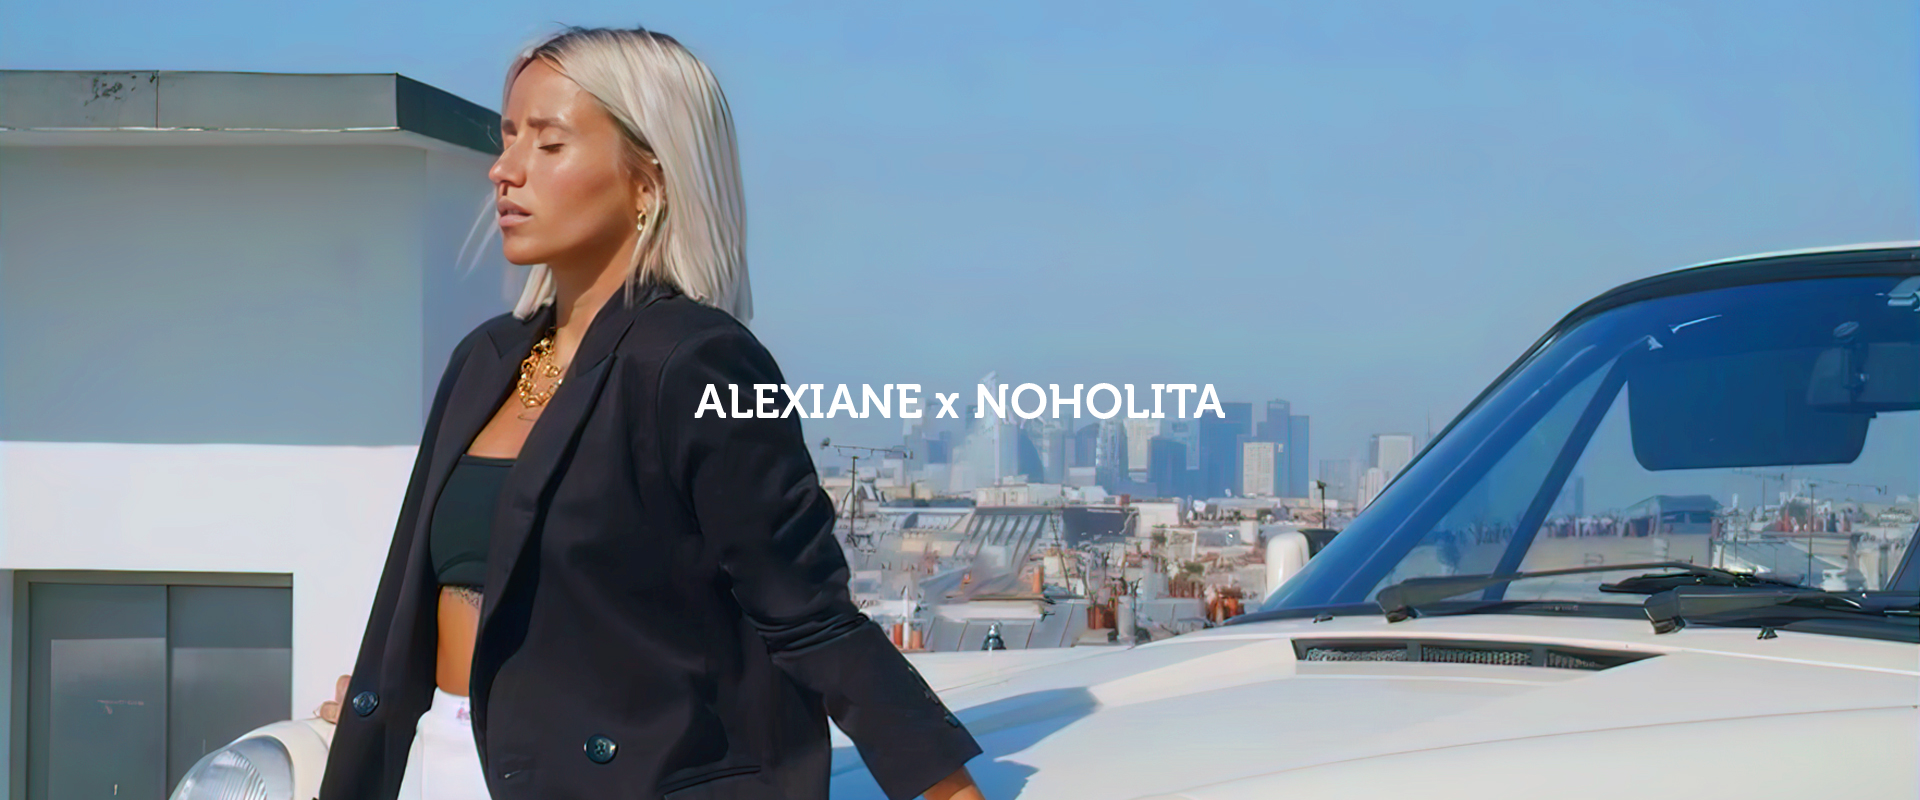 Alexiane Bijoux x Noholita